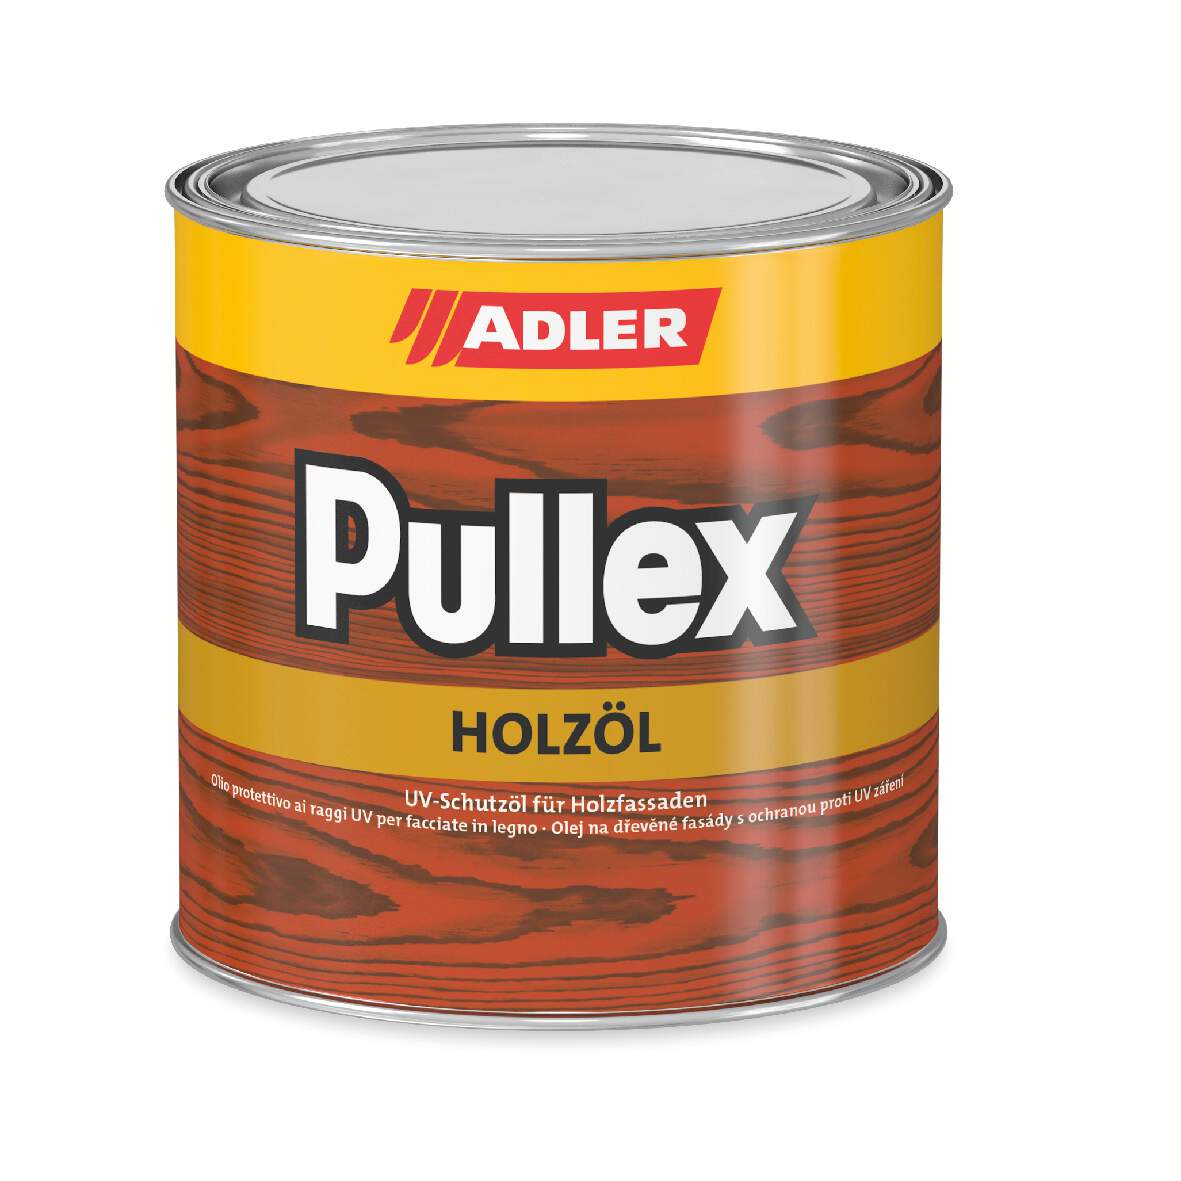 1122503 - Pullex Holzöl